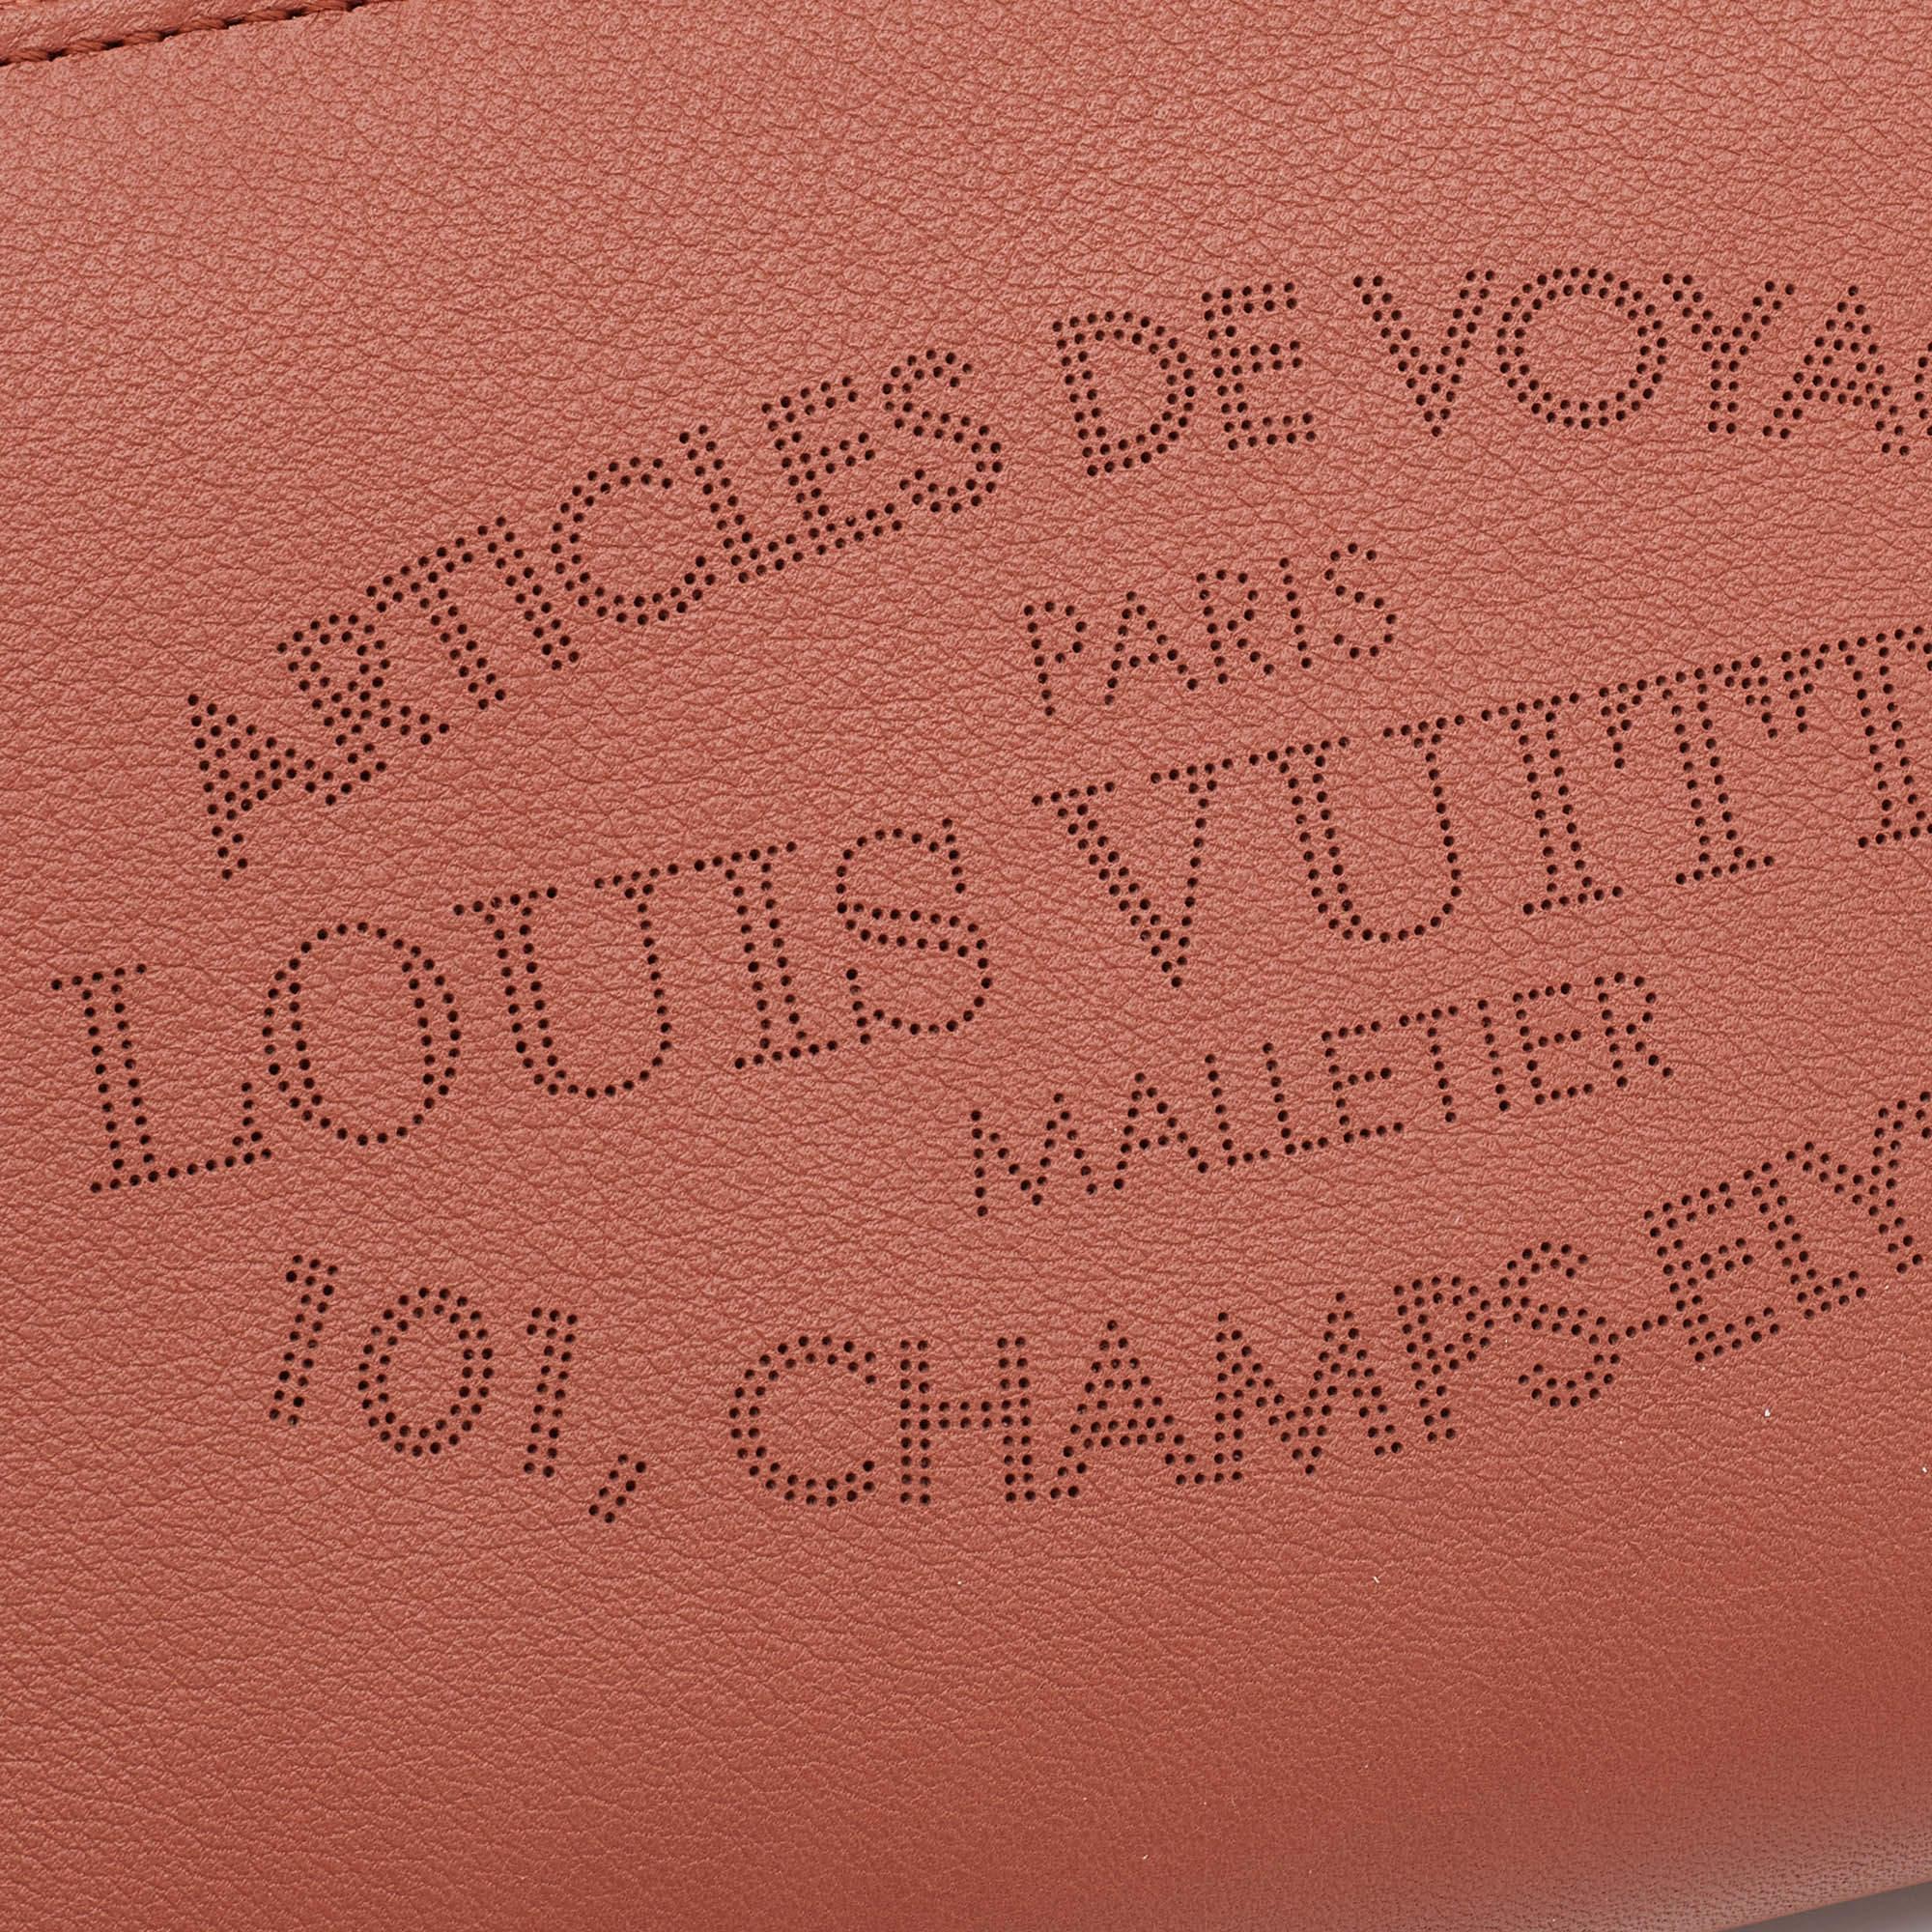 Louis Vuitton Brick Red Leather Article De Voyage Zippy Wallet 1